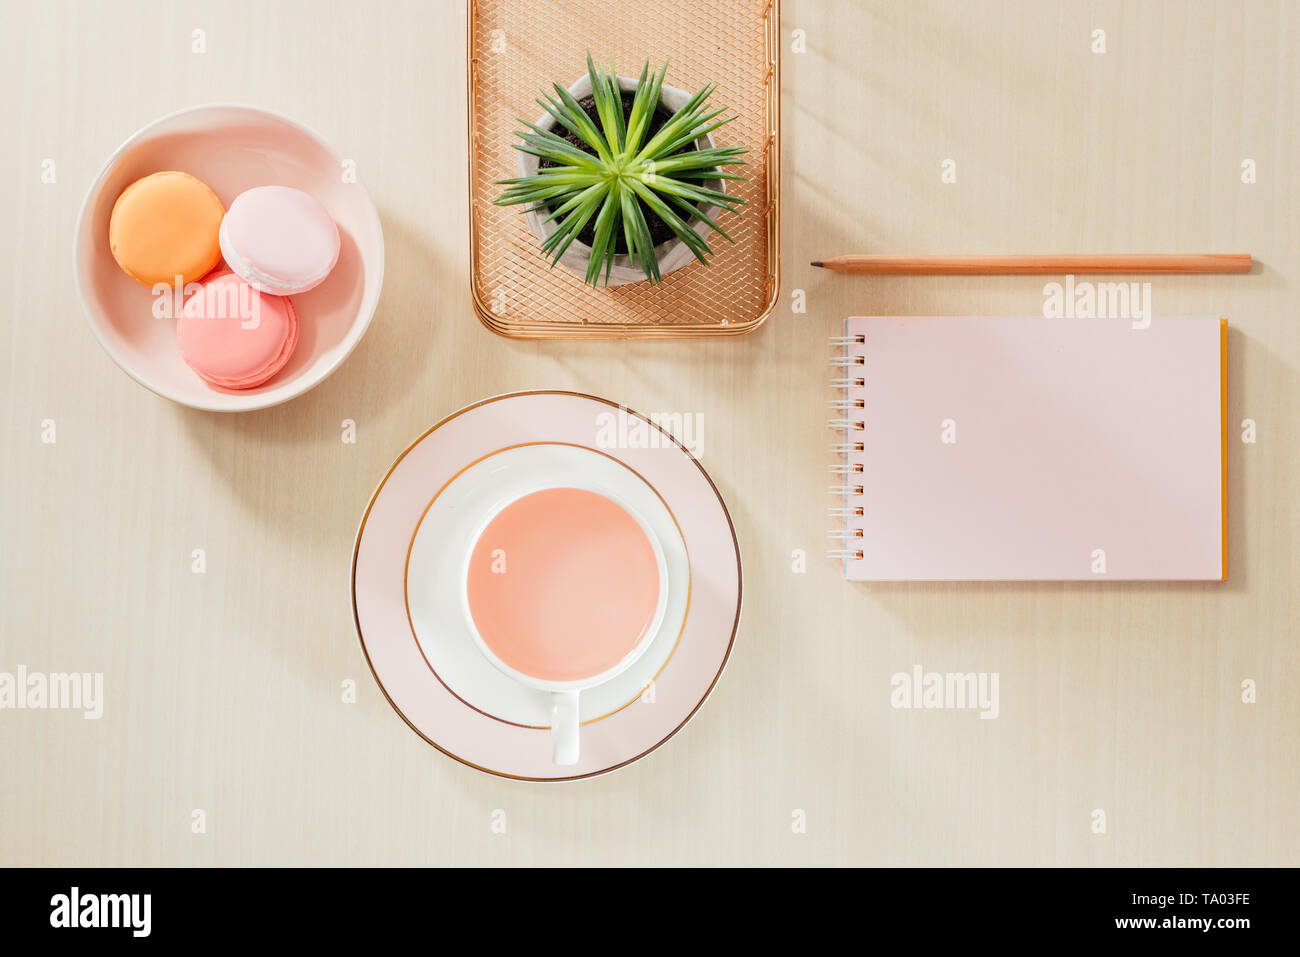 Nello stile di fotografia di stock ufficio beige scrivania con blank notebook, amaretti, forniture e tazza da caffè Foto Stock